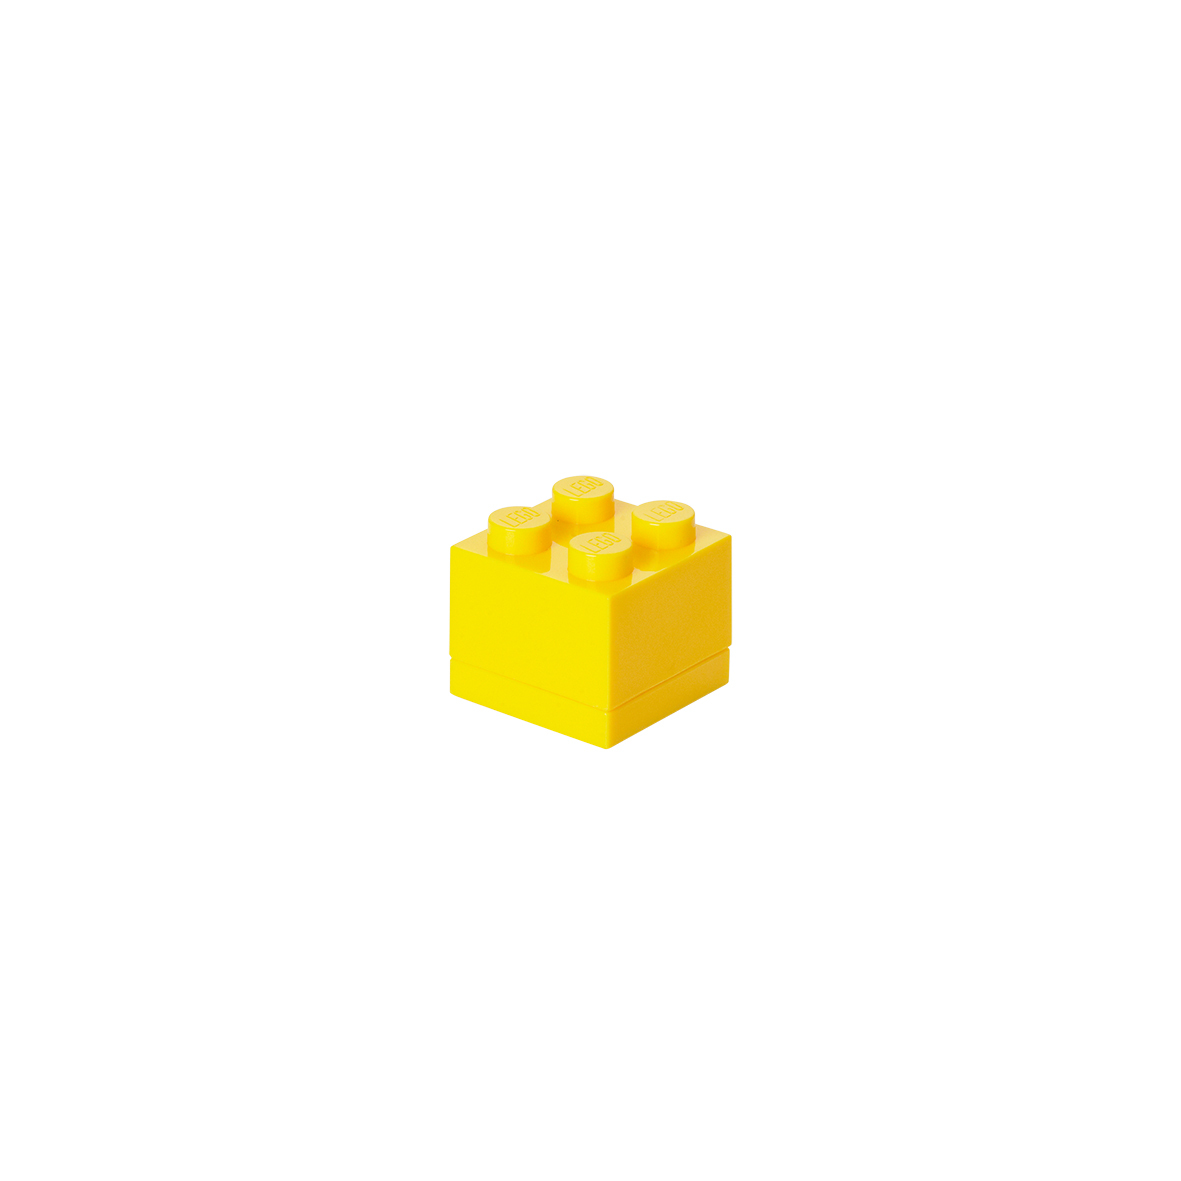 レゴブロック 収納ボックス 小物入れ レゴ ミニボックス 4 lego 小物 パーツ 収納 おしゃれ...